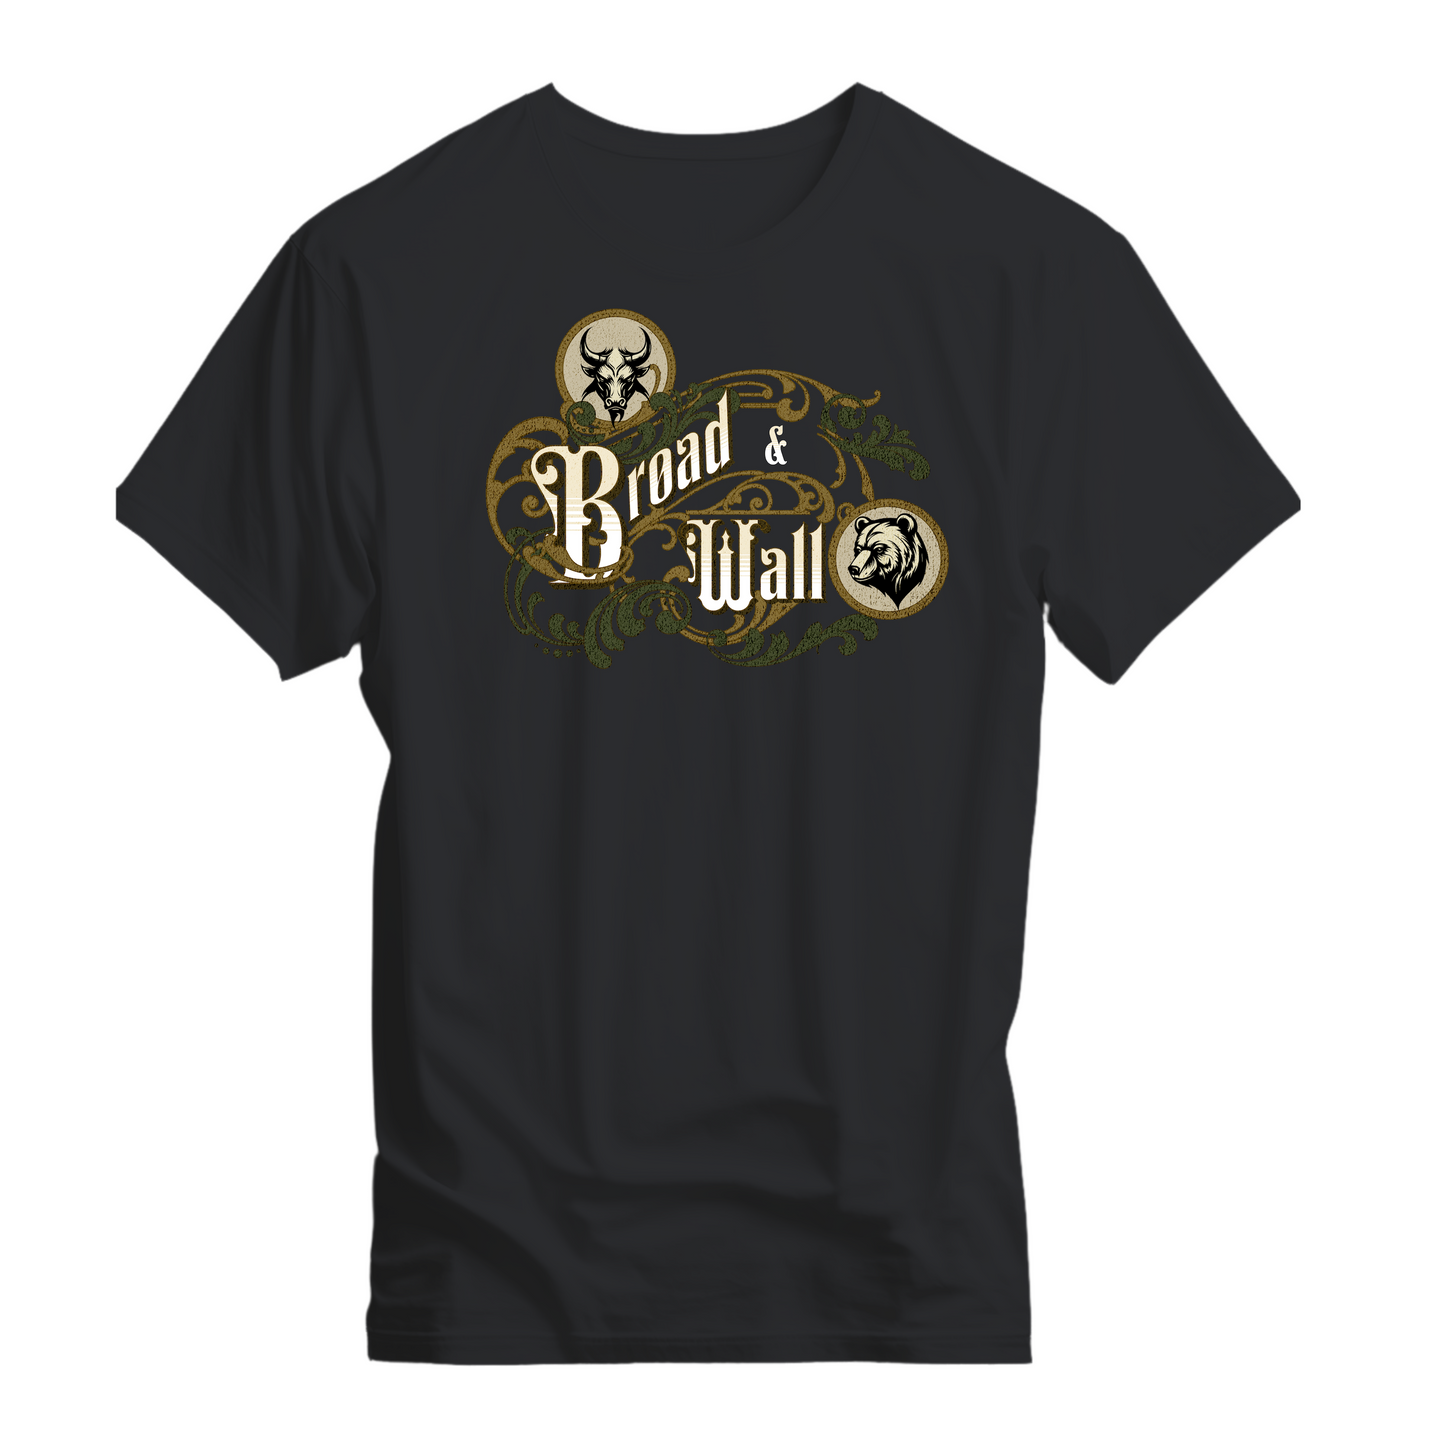 Broad & Wall T-shirt - Tortuna